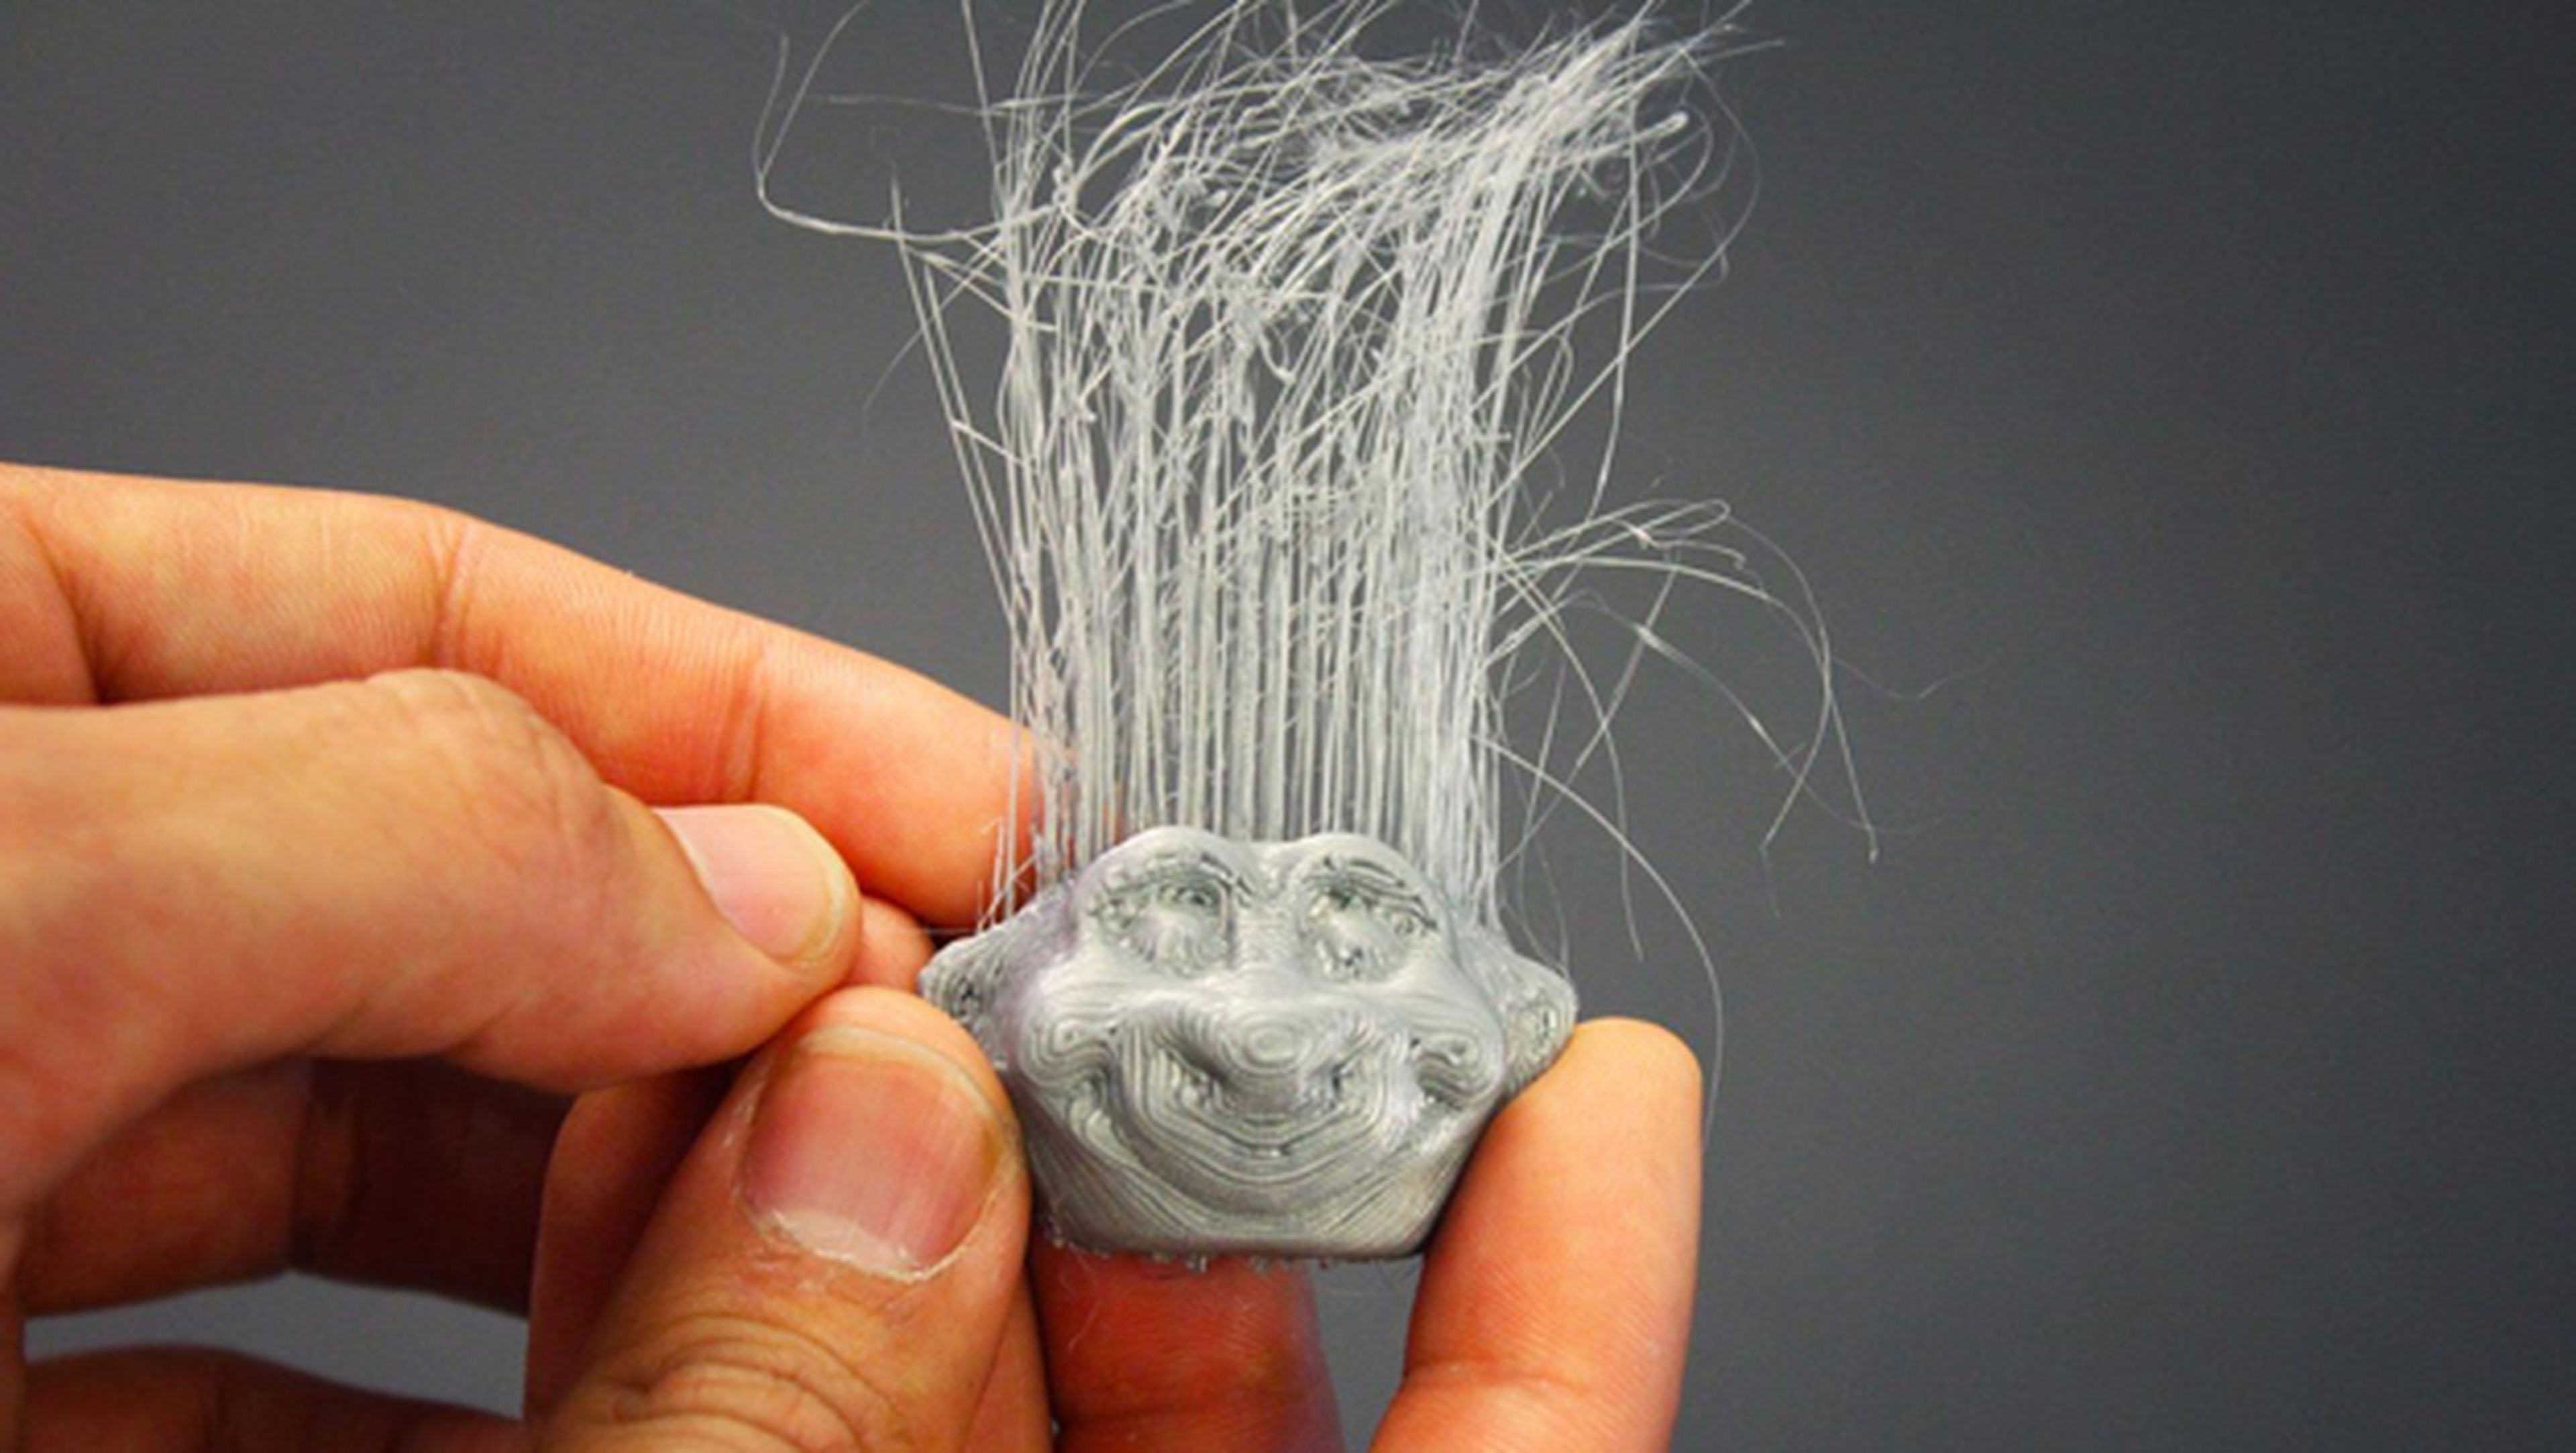 Consiguen fabricar pelo con una impresora 3D de bajo coste